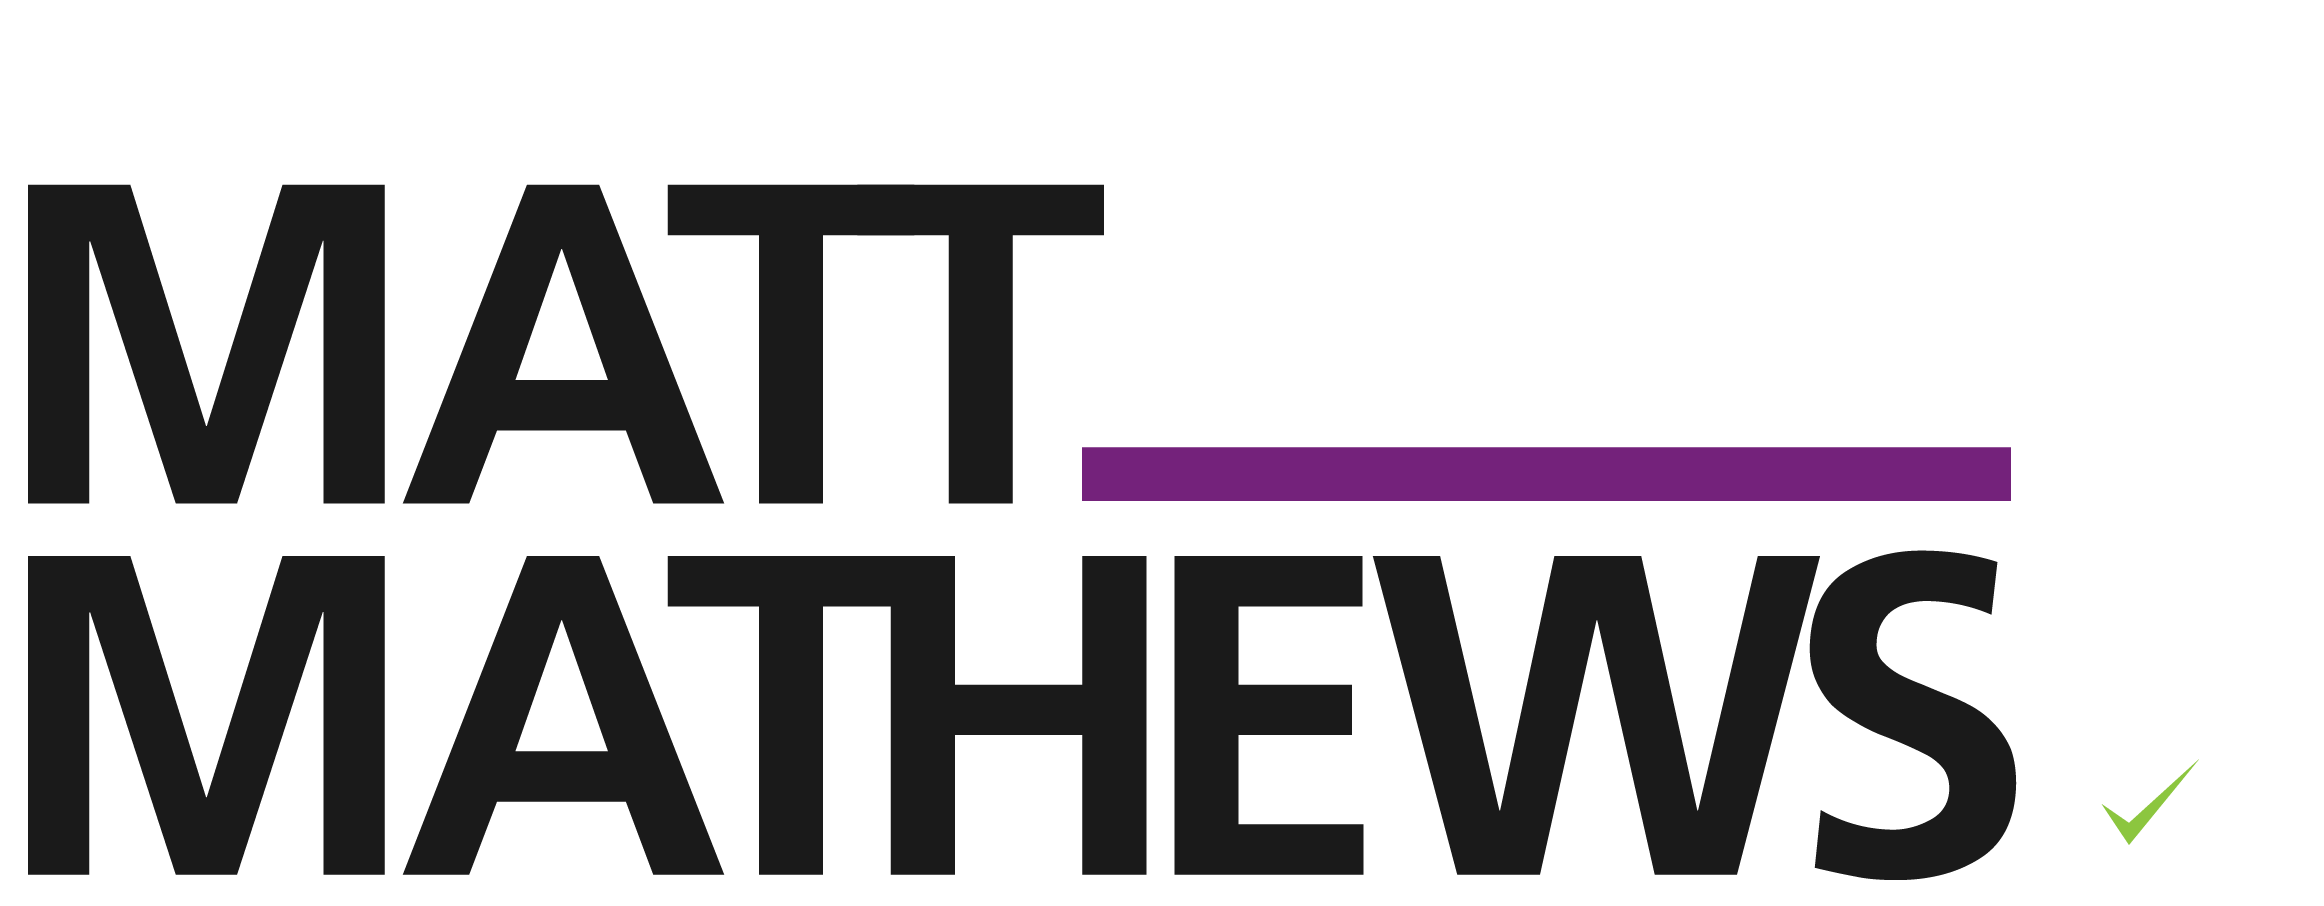 logo selected matt